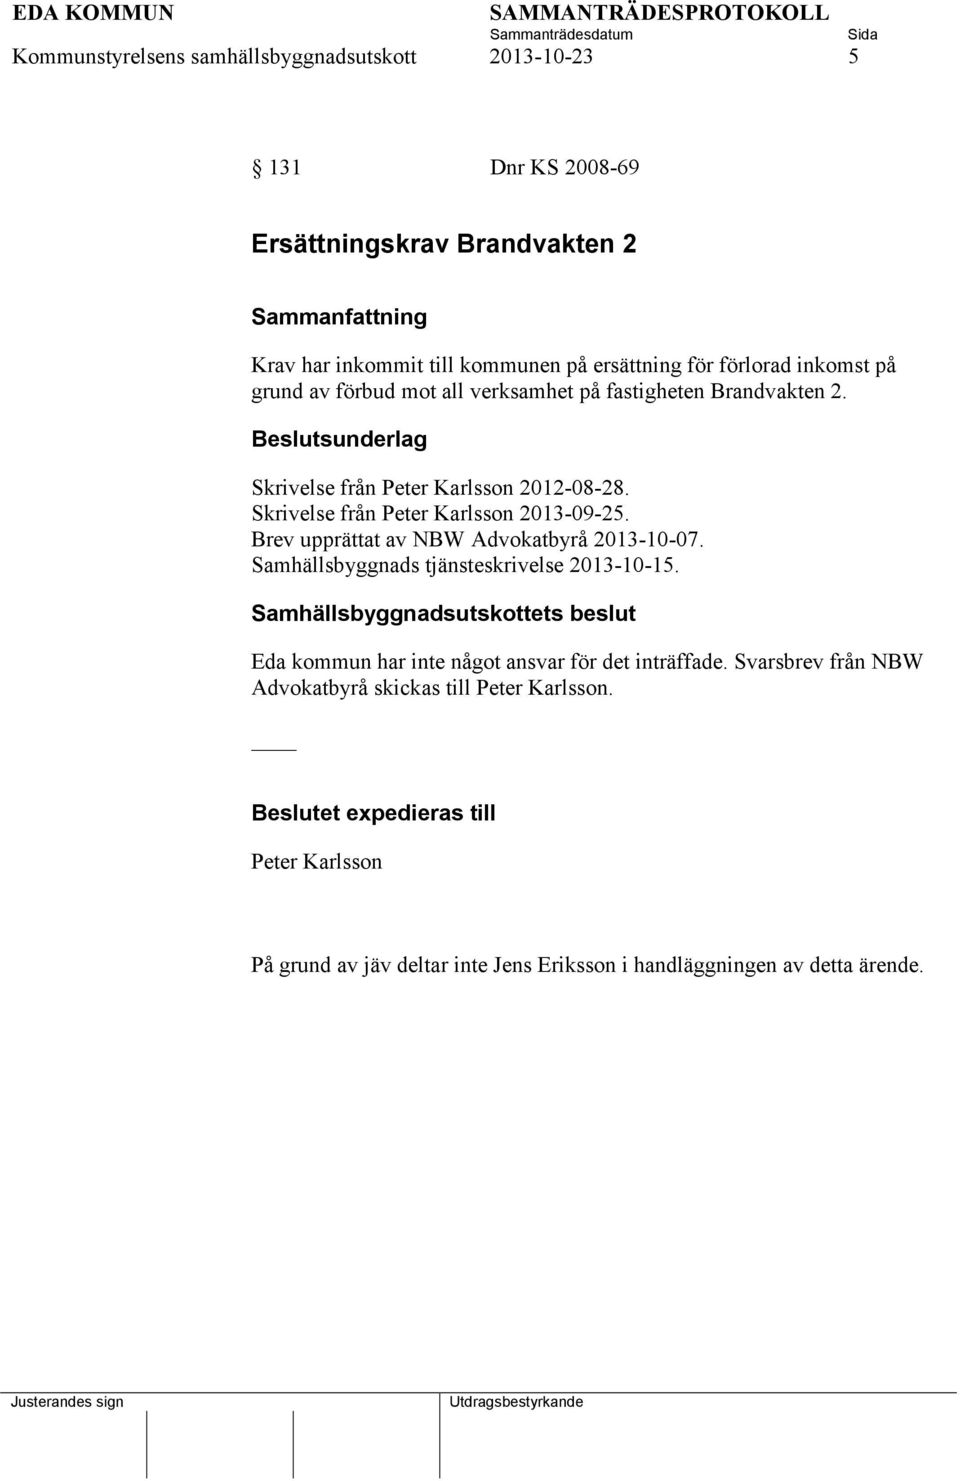 Brev upprättat av NBW Advokatbyrå 2013-10-07. Samhällsbyggnads tjänsteskrivelse 2013-10-15.